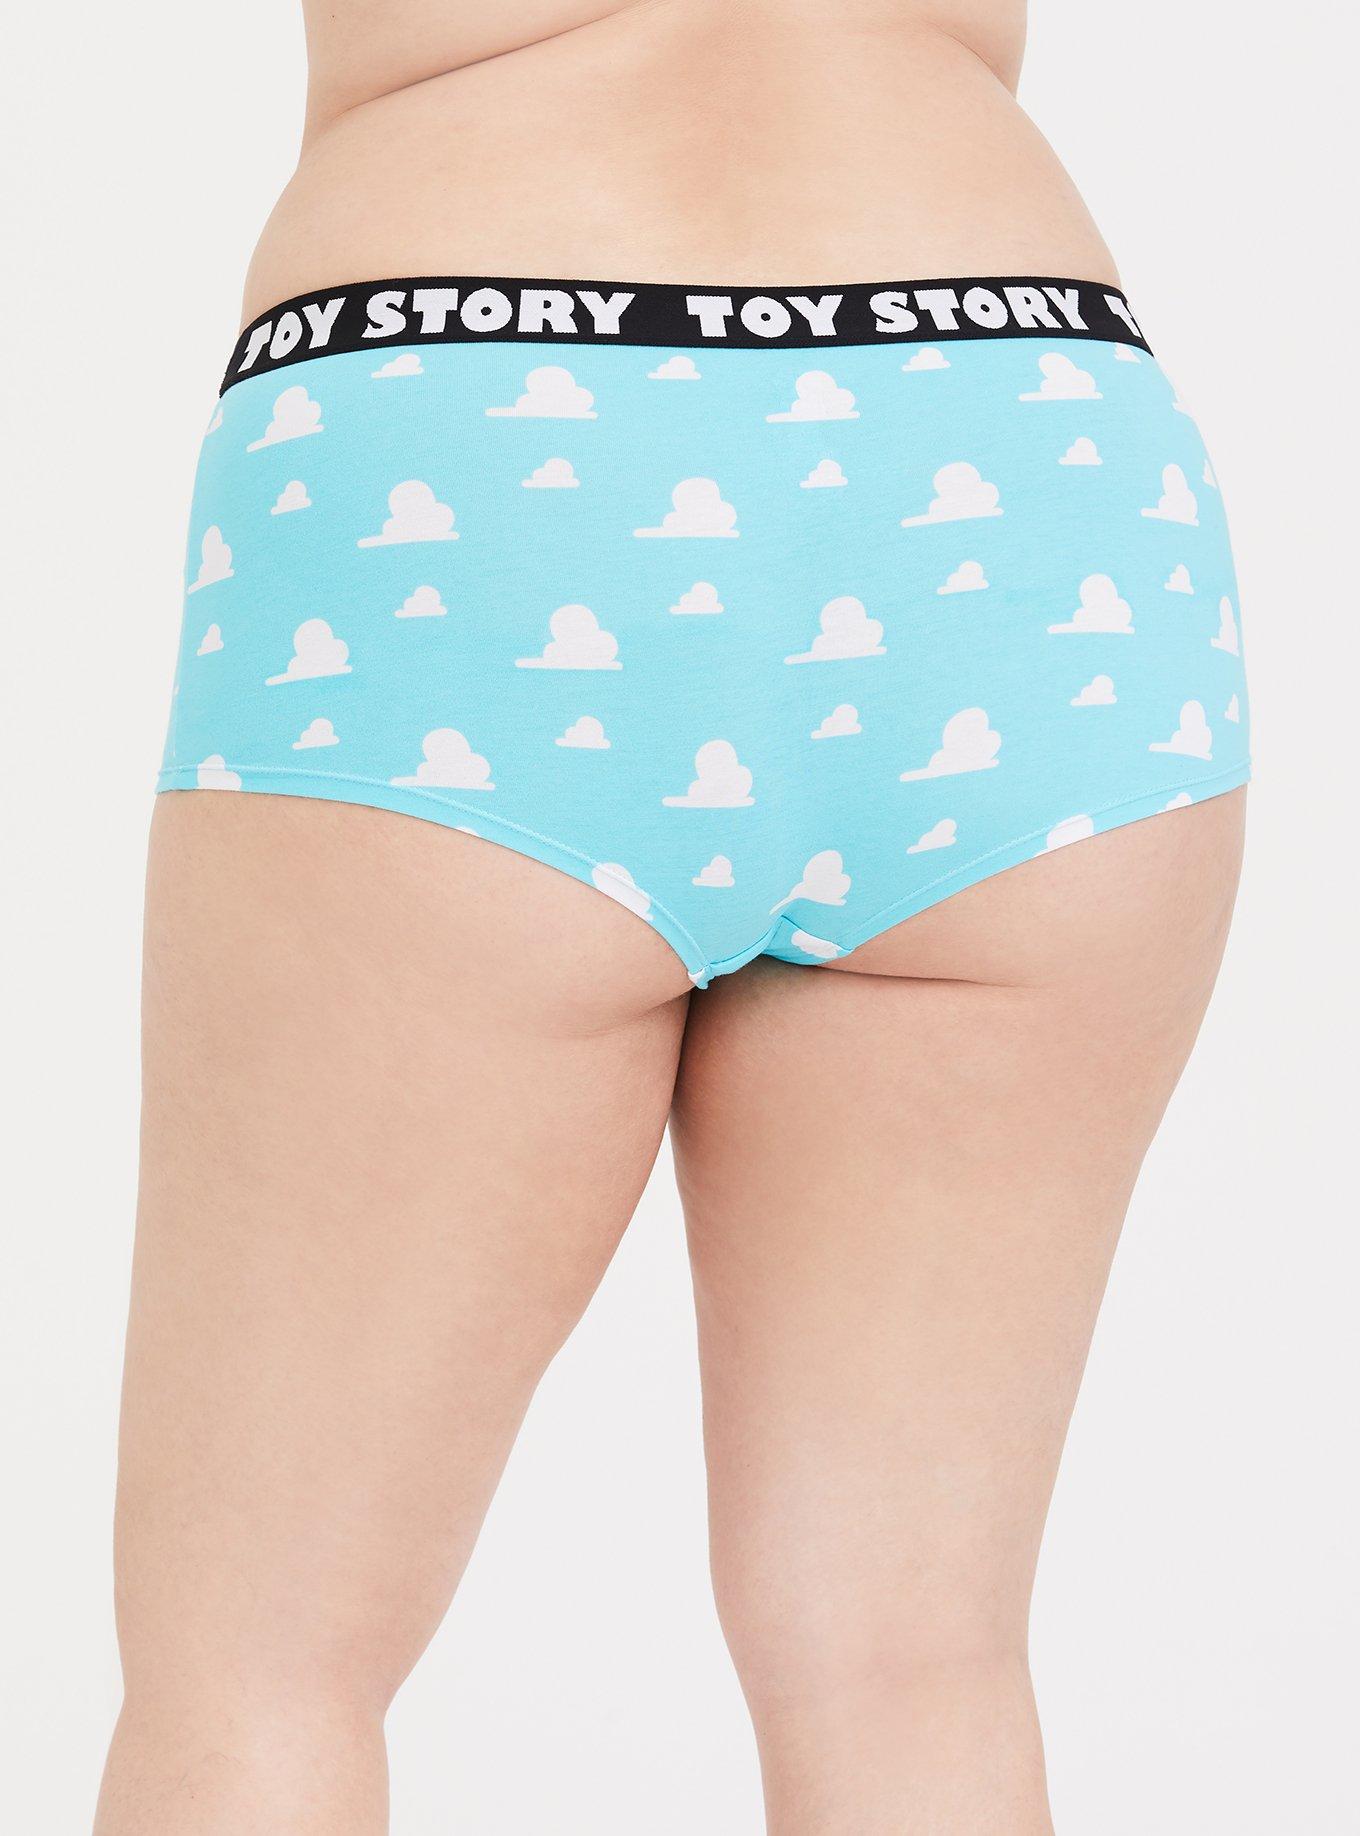 NEW DISNEY Toy Story Ladies Hipster Briefs Underwear Knicker